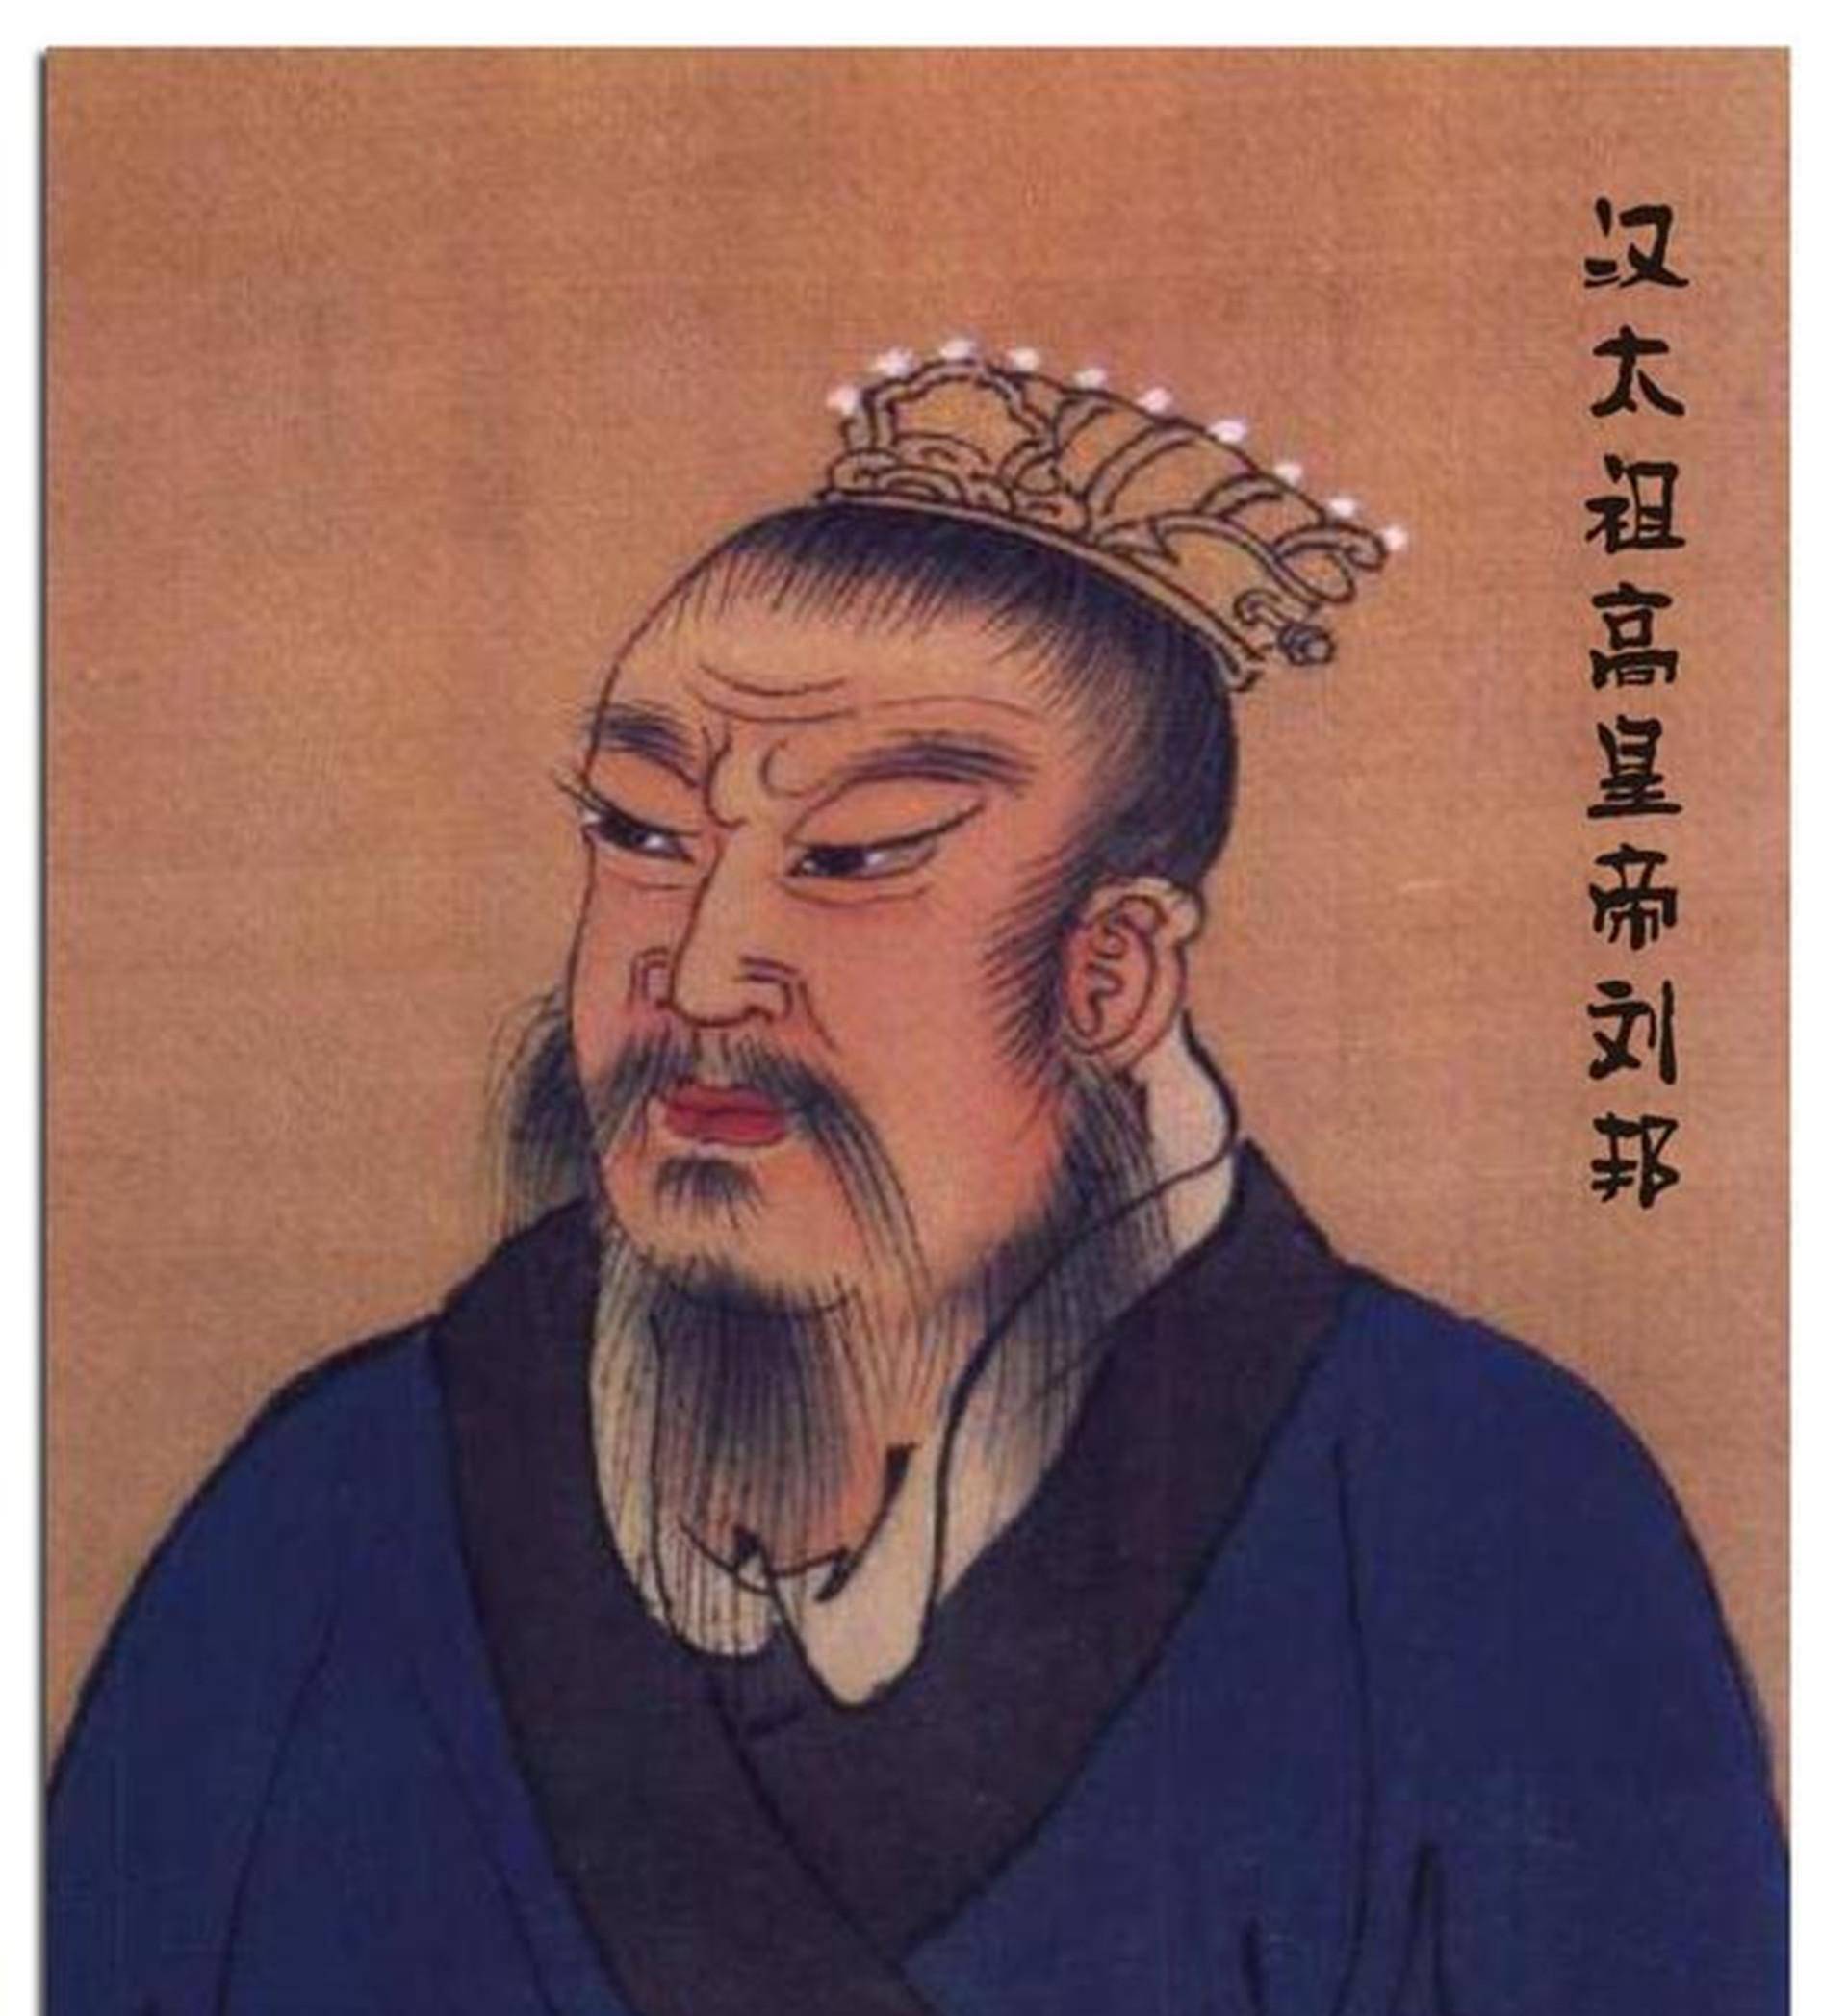 到了汉朝,汉高祖刘邦对待百姓比较宽容,仁义治天下,以德服人,汉朝很多